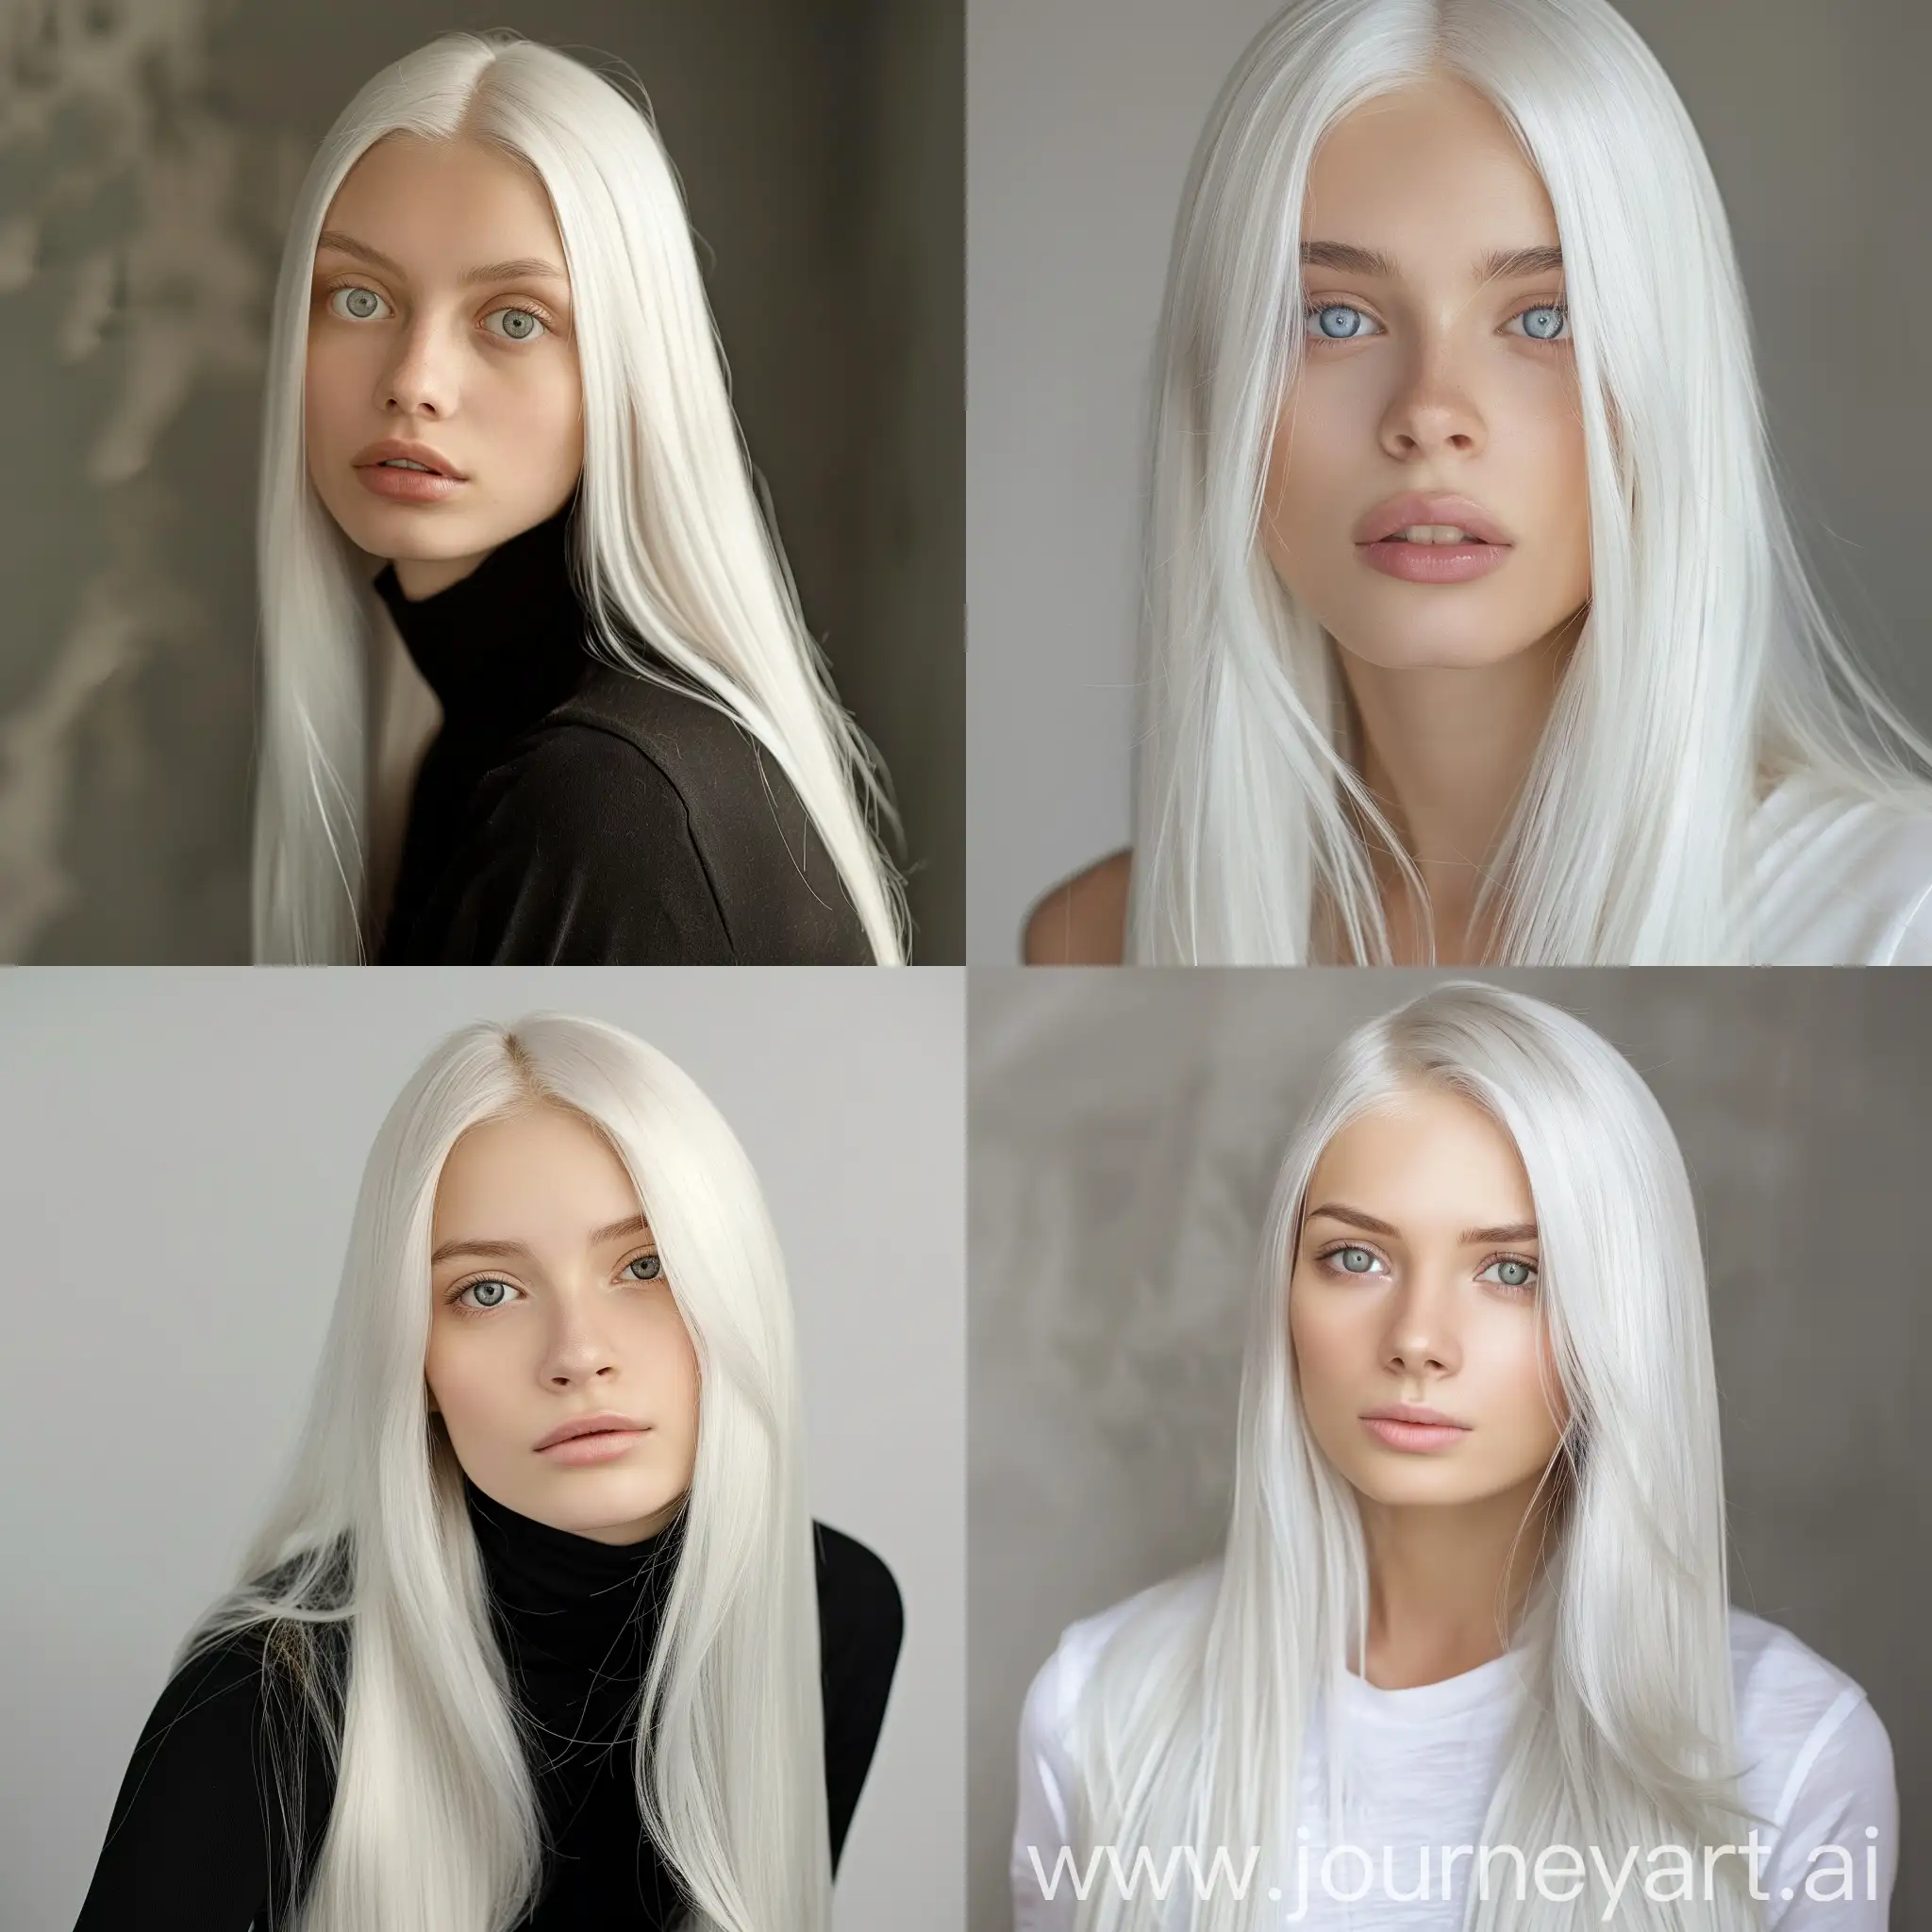 mujer modelo joven de 19 años con cabello liso largo brilloso de color blanco